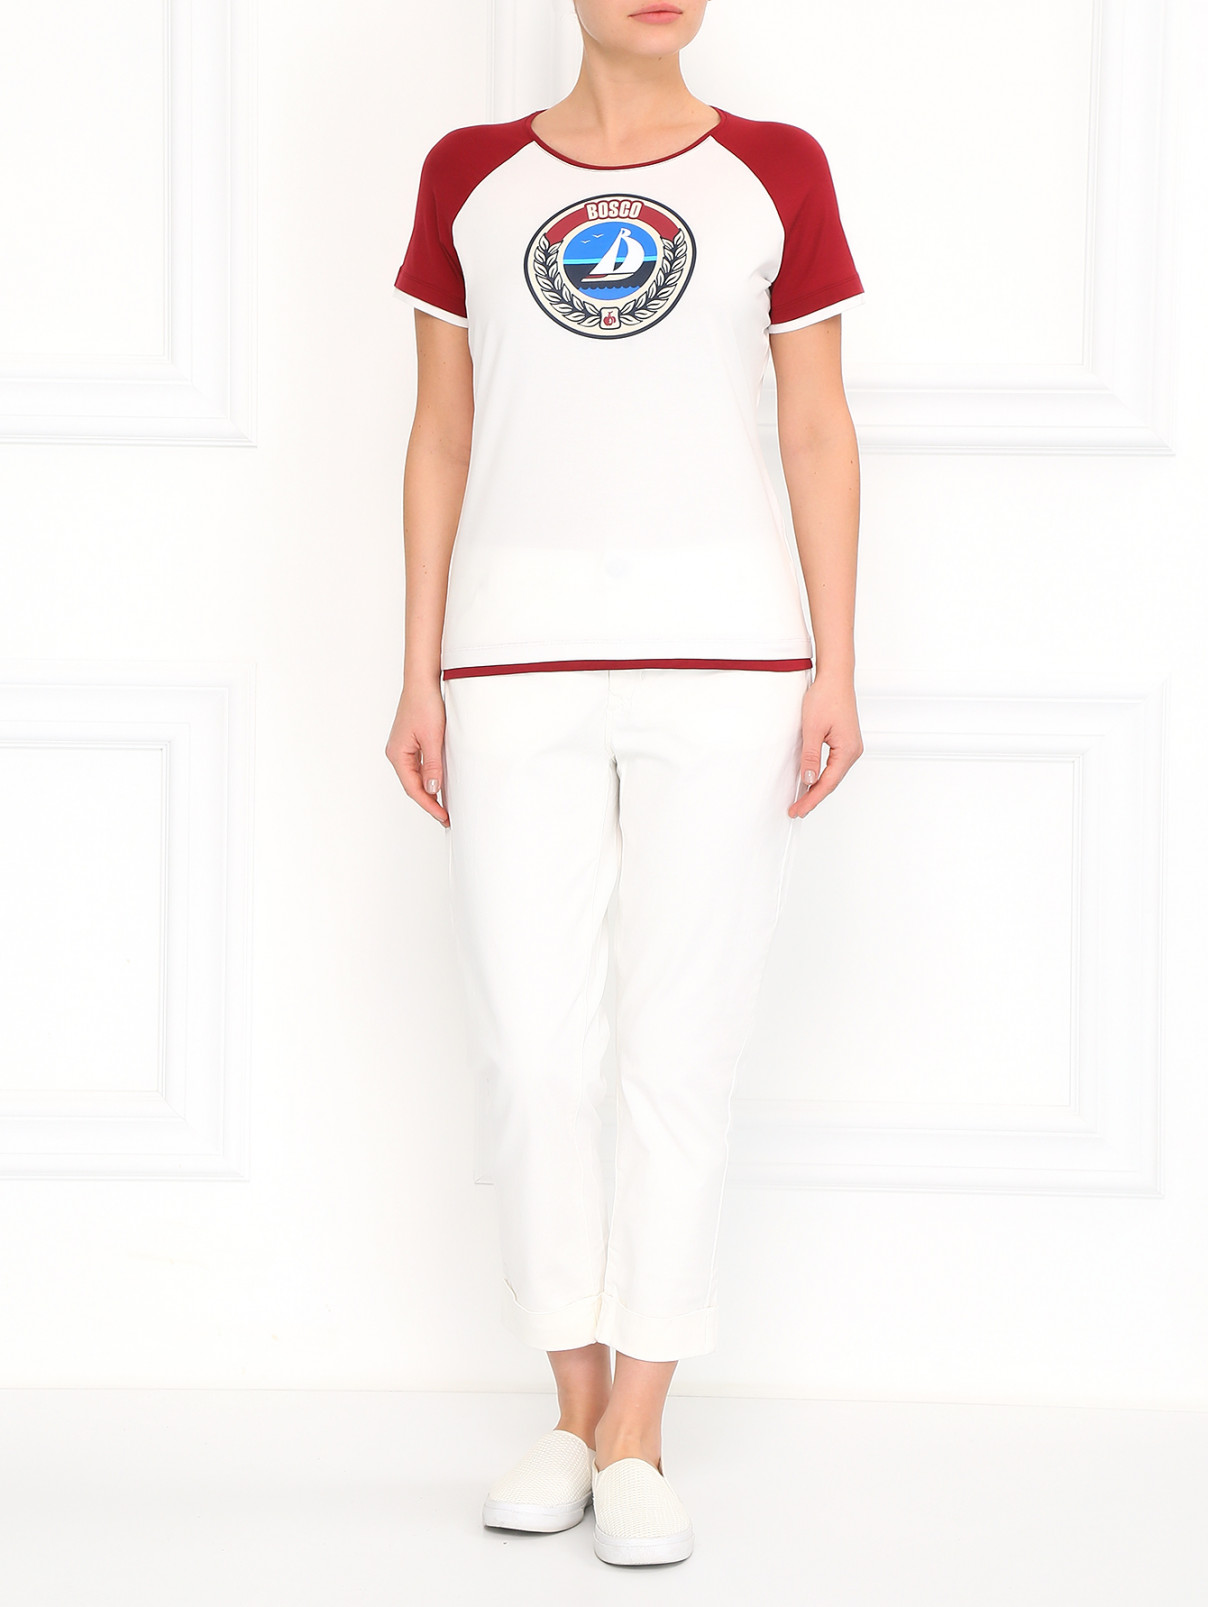 Хлопковая футболка с принтом BOSCO  –  Модель Общий вид  – Цвет:  Белый